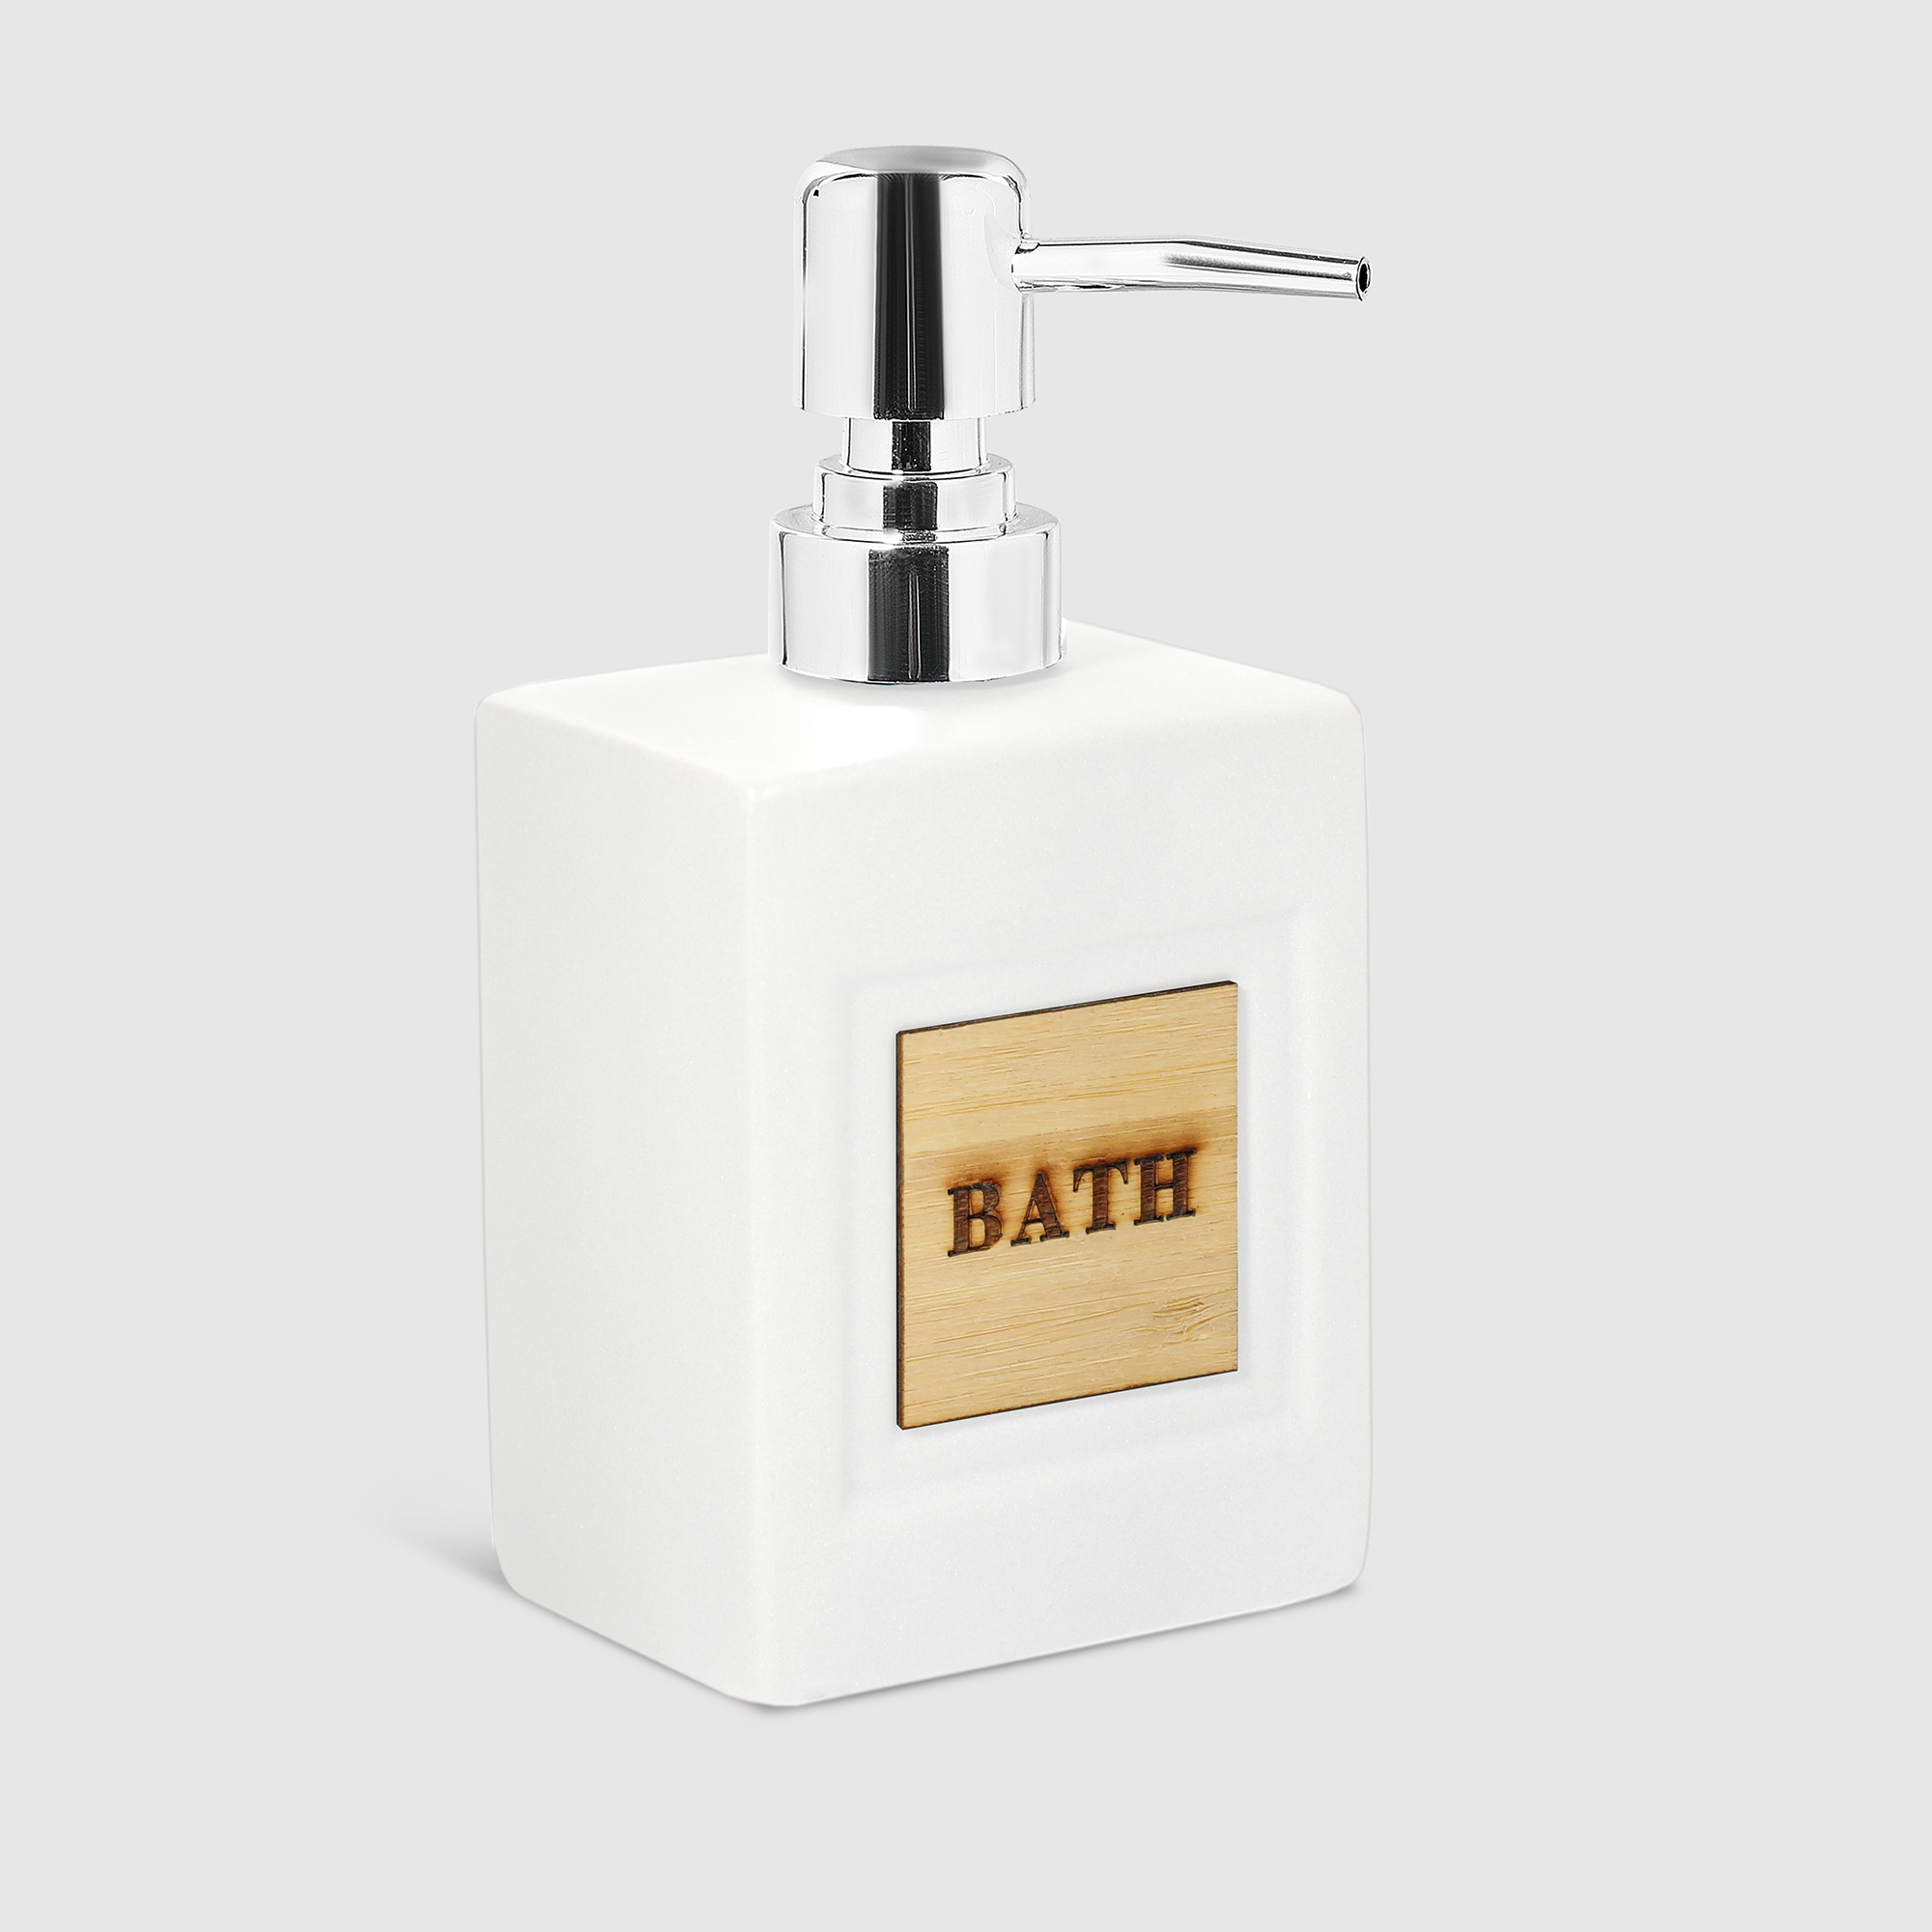 Диспенсер Mercury Sanitary BATH для жидкого мыла, в ассортименте - фото 6